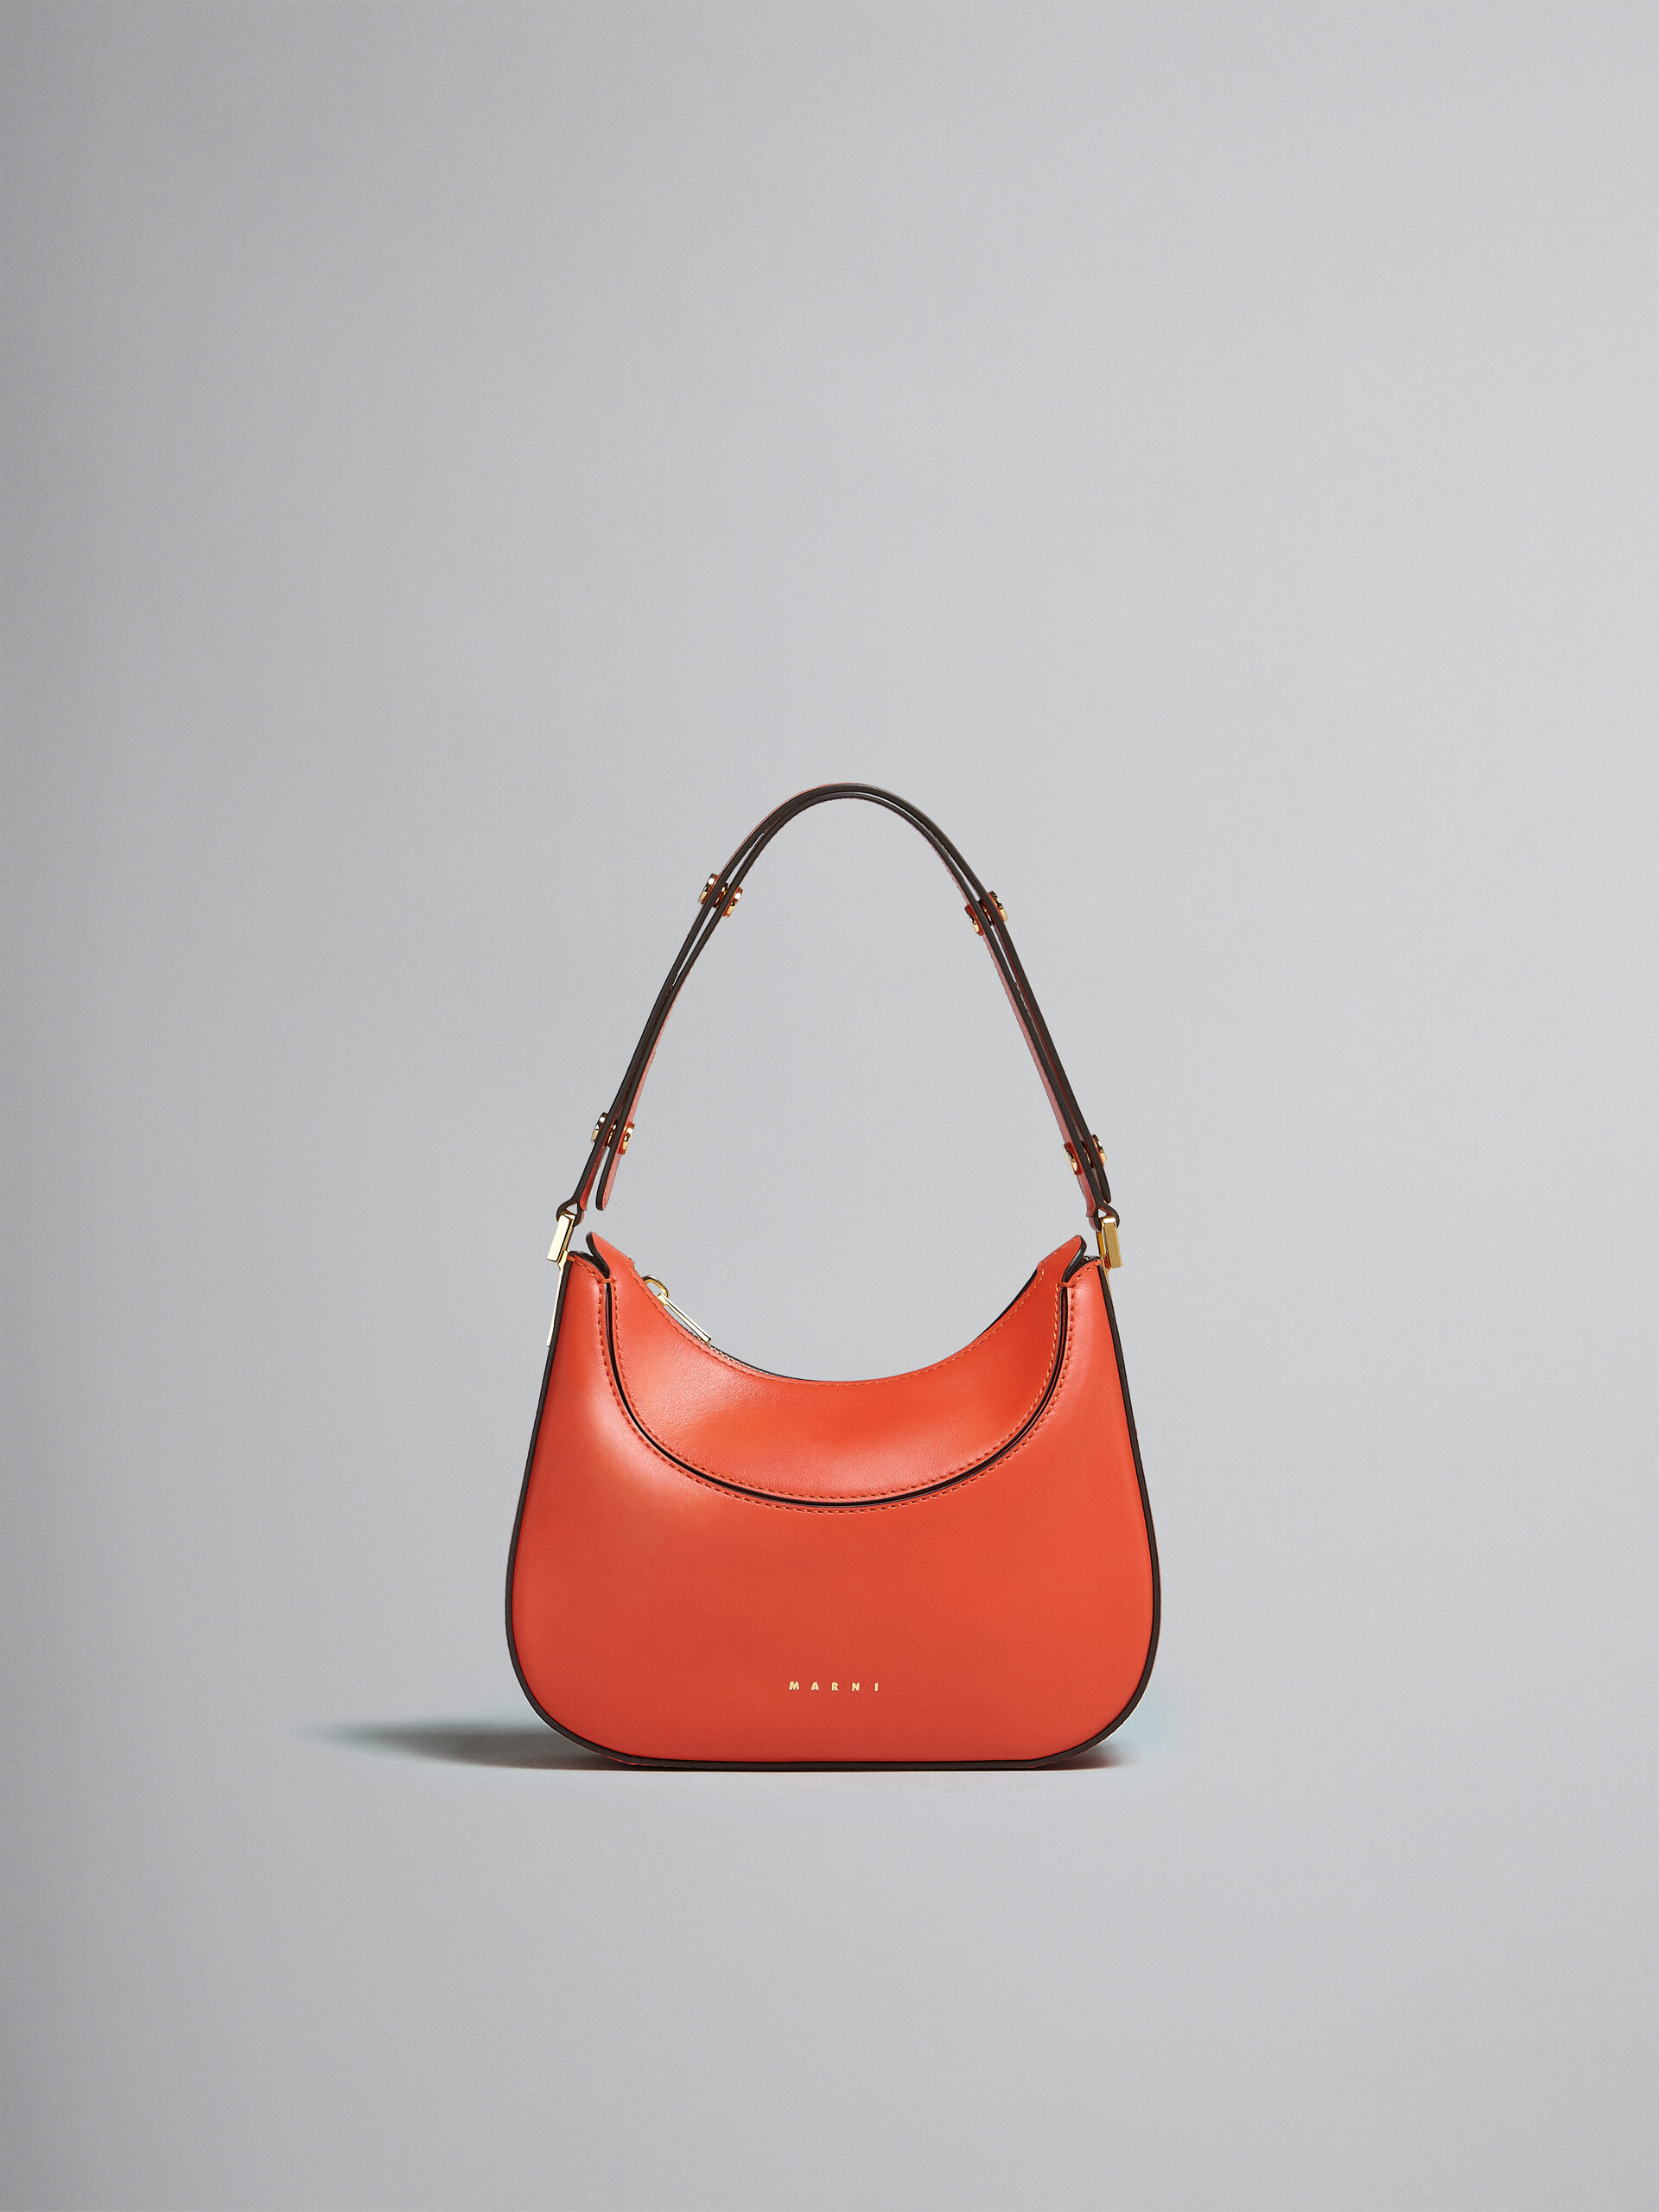 Milano Mini Bag in orange leather - Handbag - Image 1